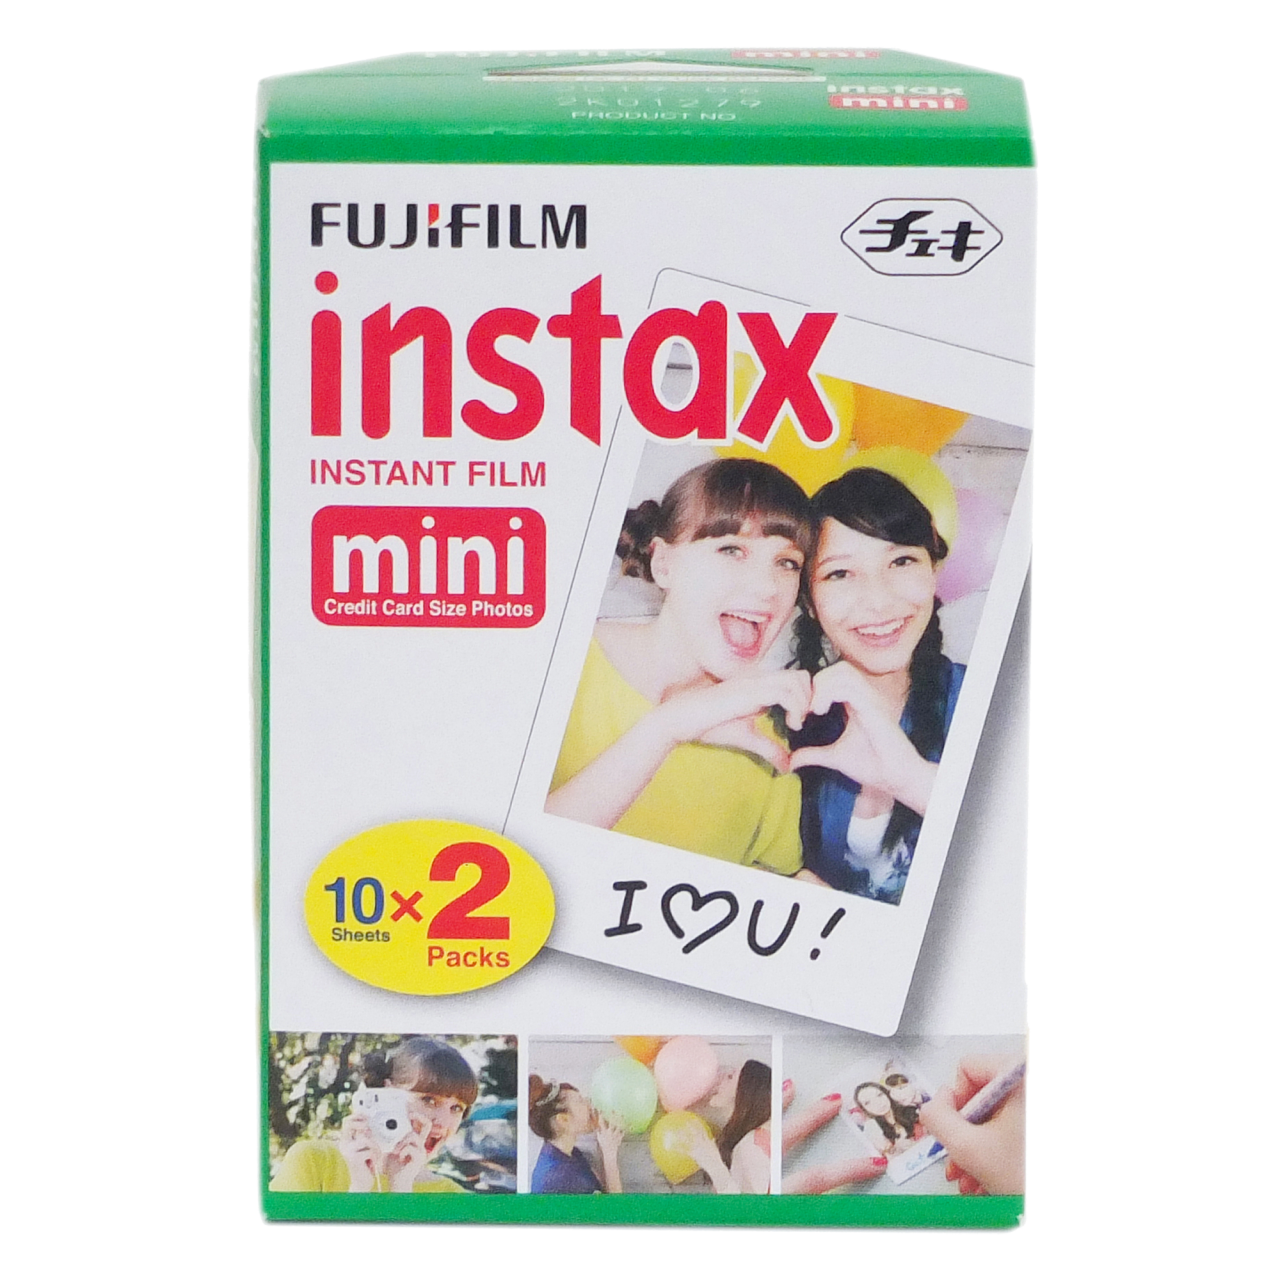 Instax Mini Film Fotoğraf Makinesi